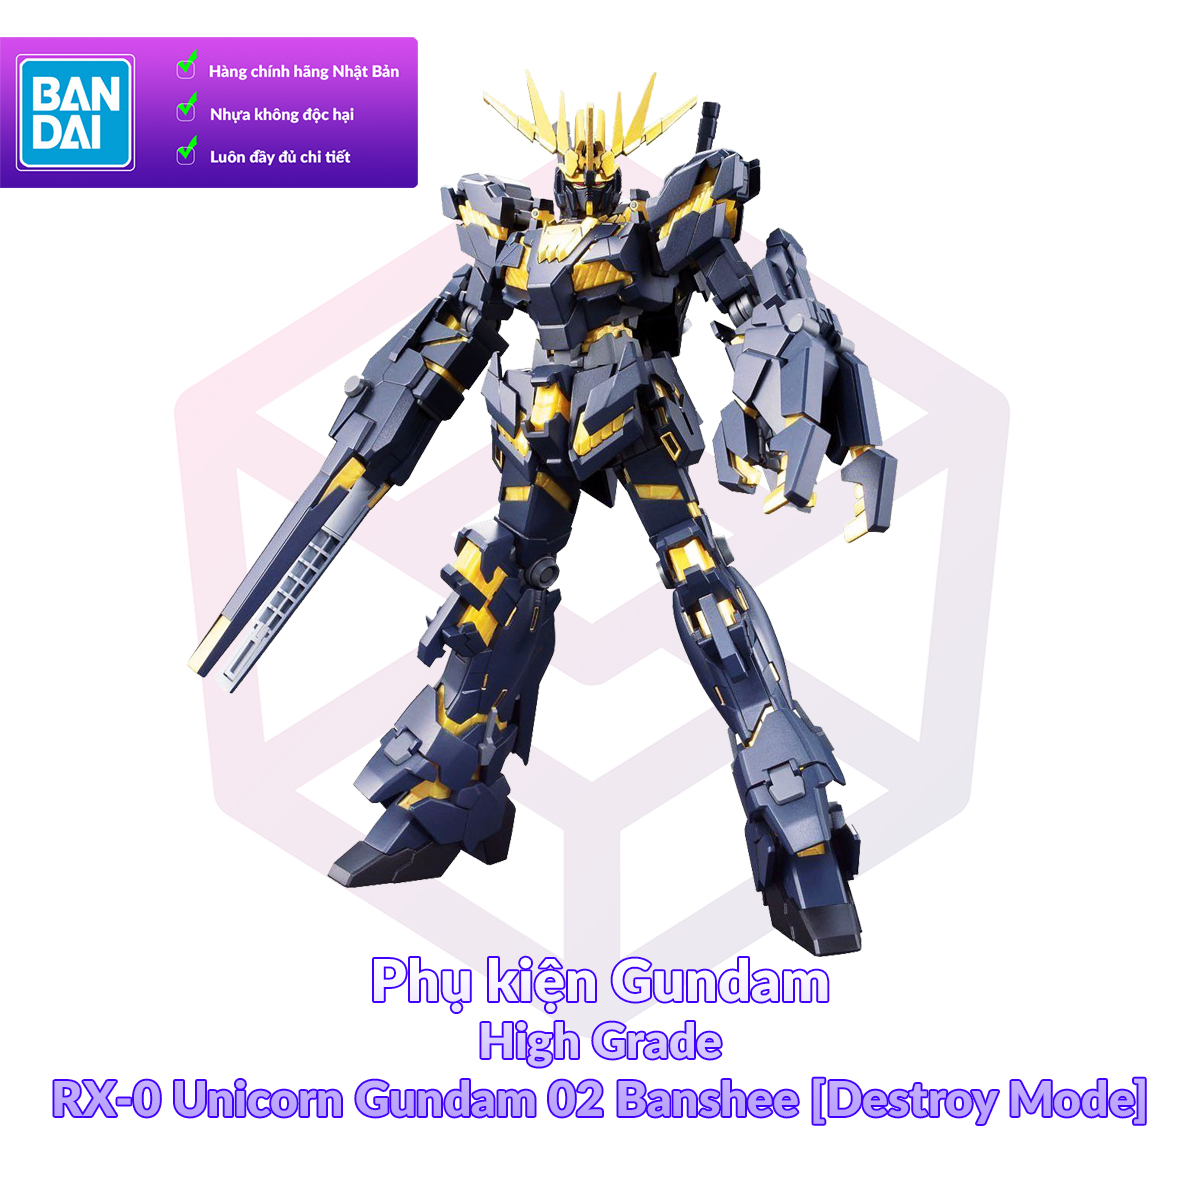 7-11 12 VOUCHER 8%Mô Hình Gundam Bandai HG 134 RX-0 Unicorn Gundam 02